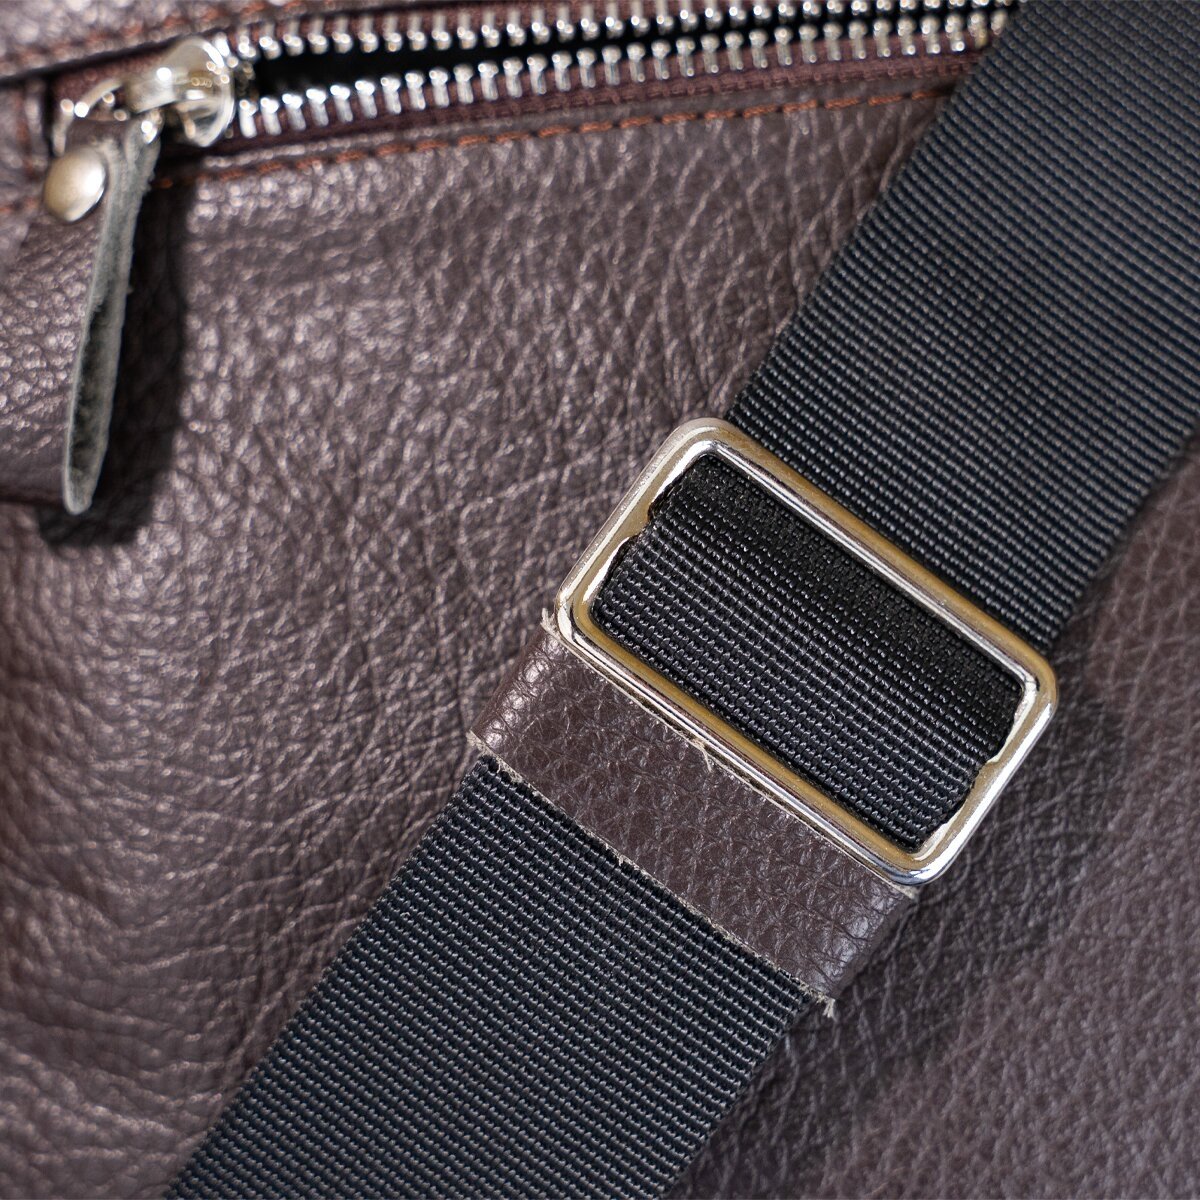 Мужская сумка из натуральной кожи коричневого цвета в маленьком размере SHVIGEL (00899)